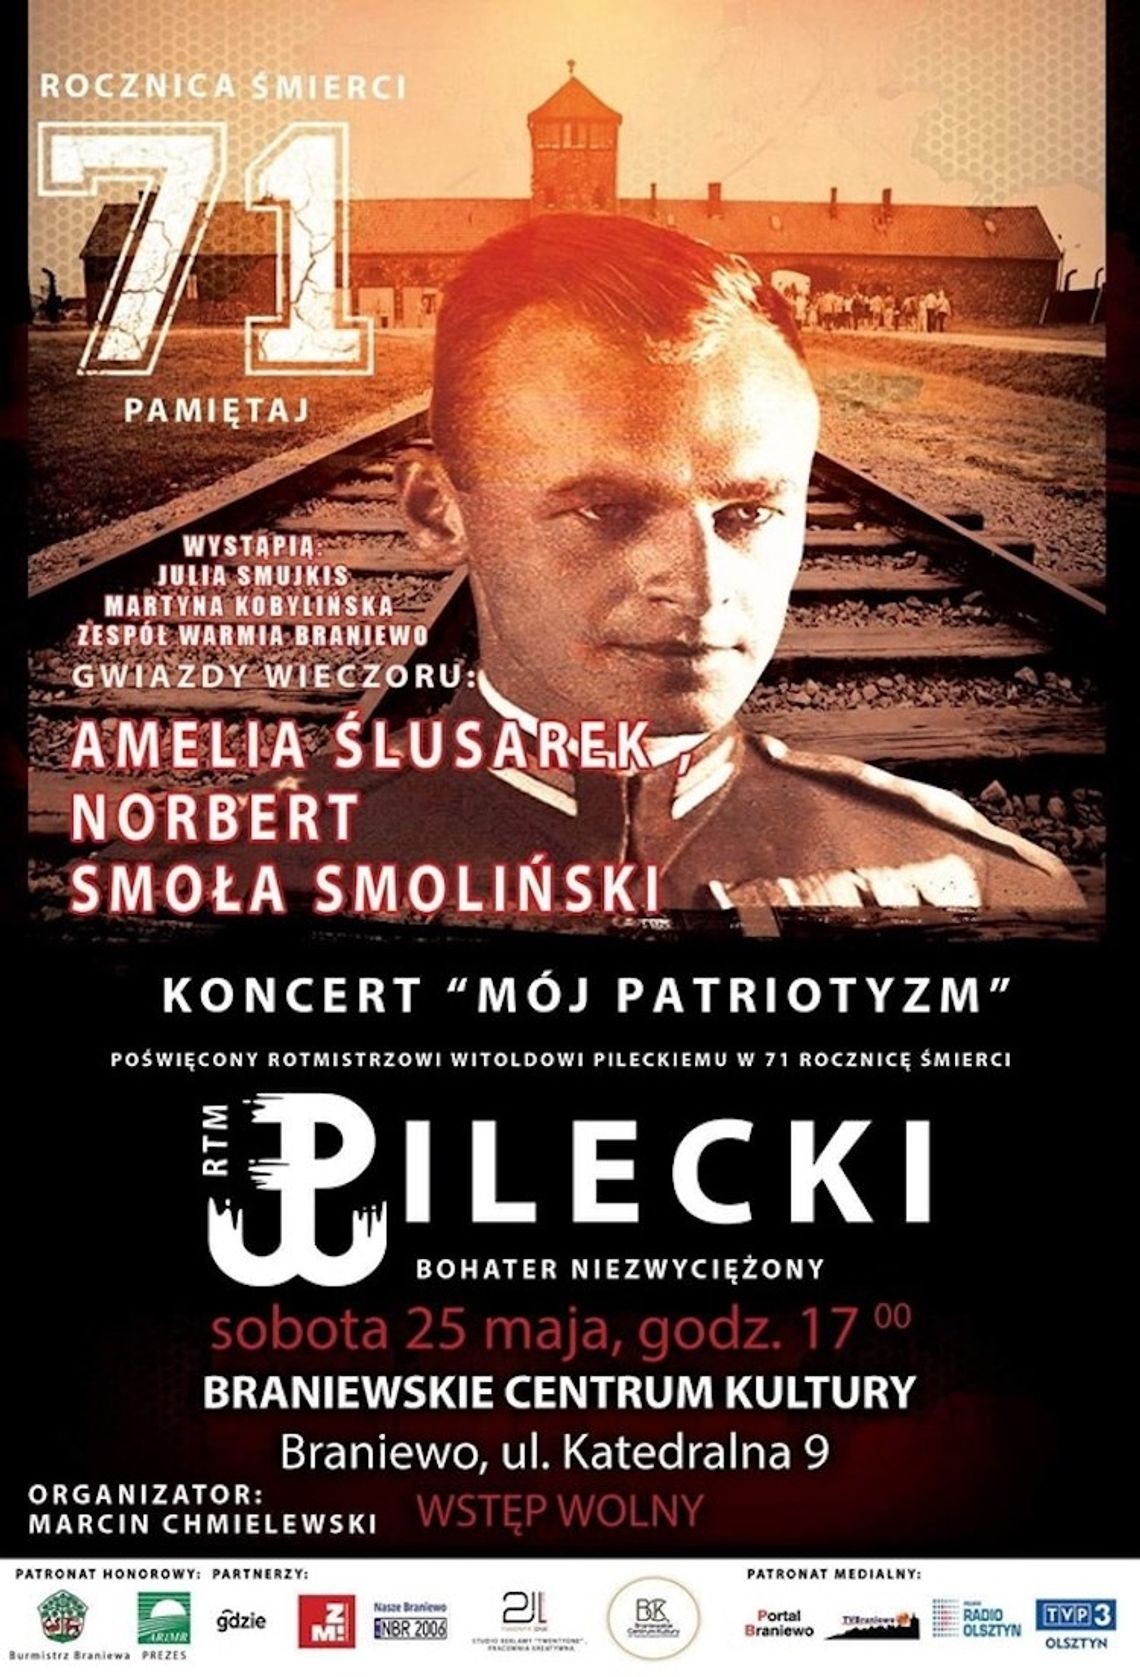 Rotmistrz Pilecki patronem i przewodnikiem młodych